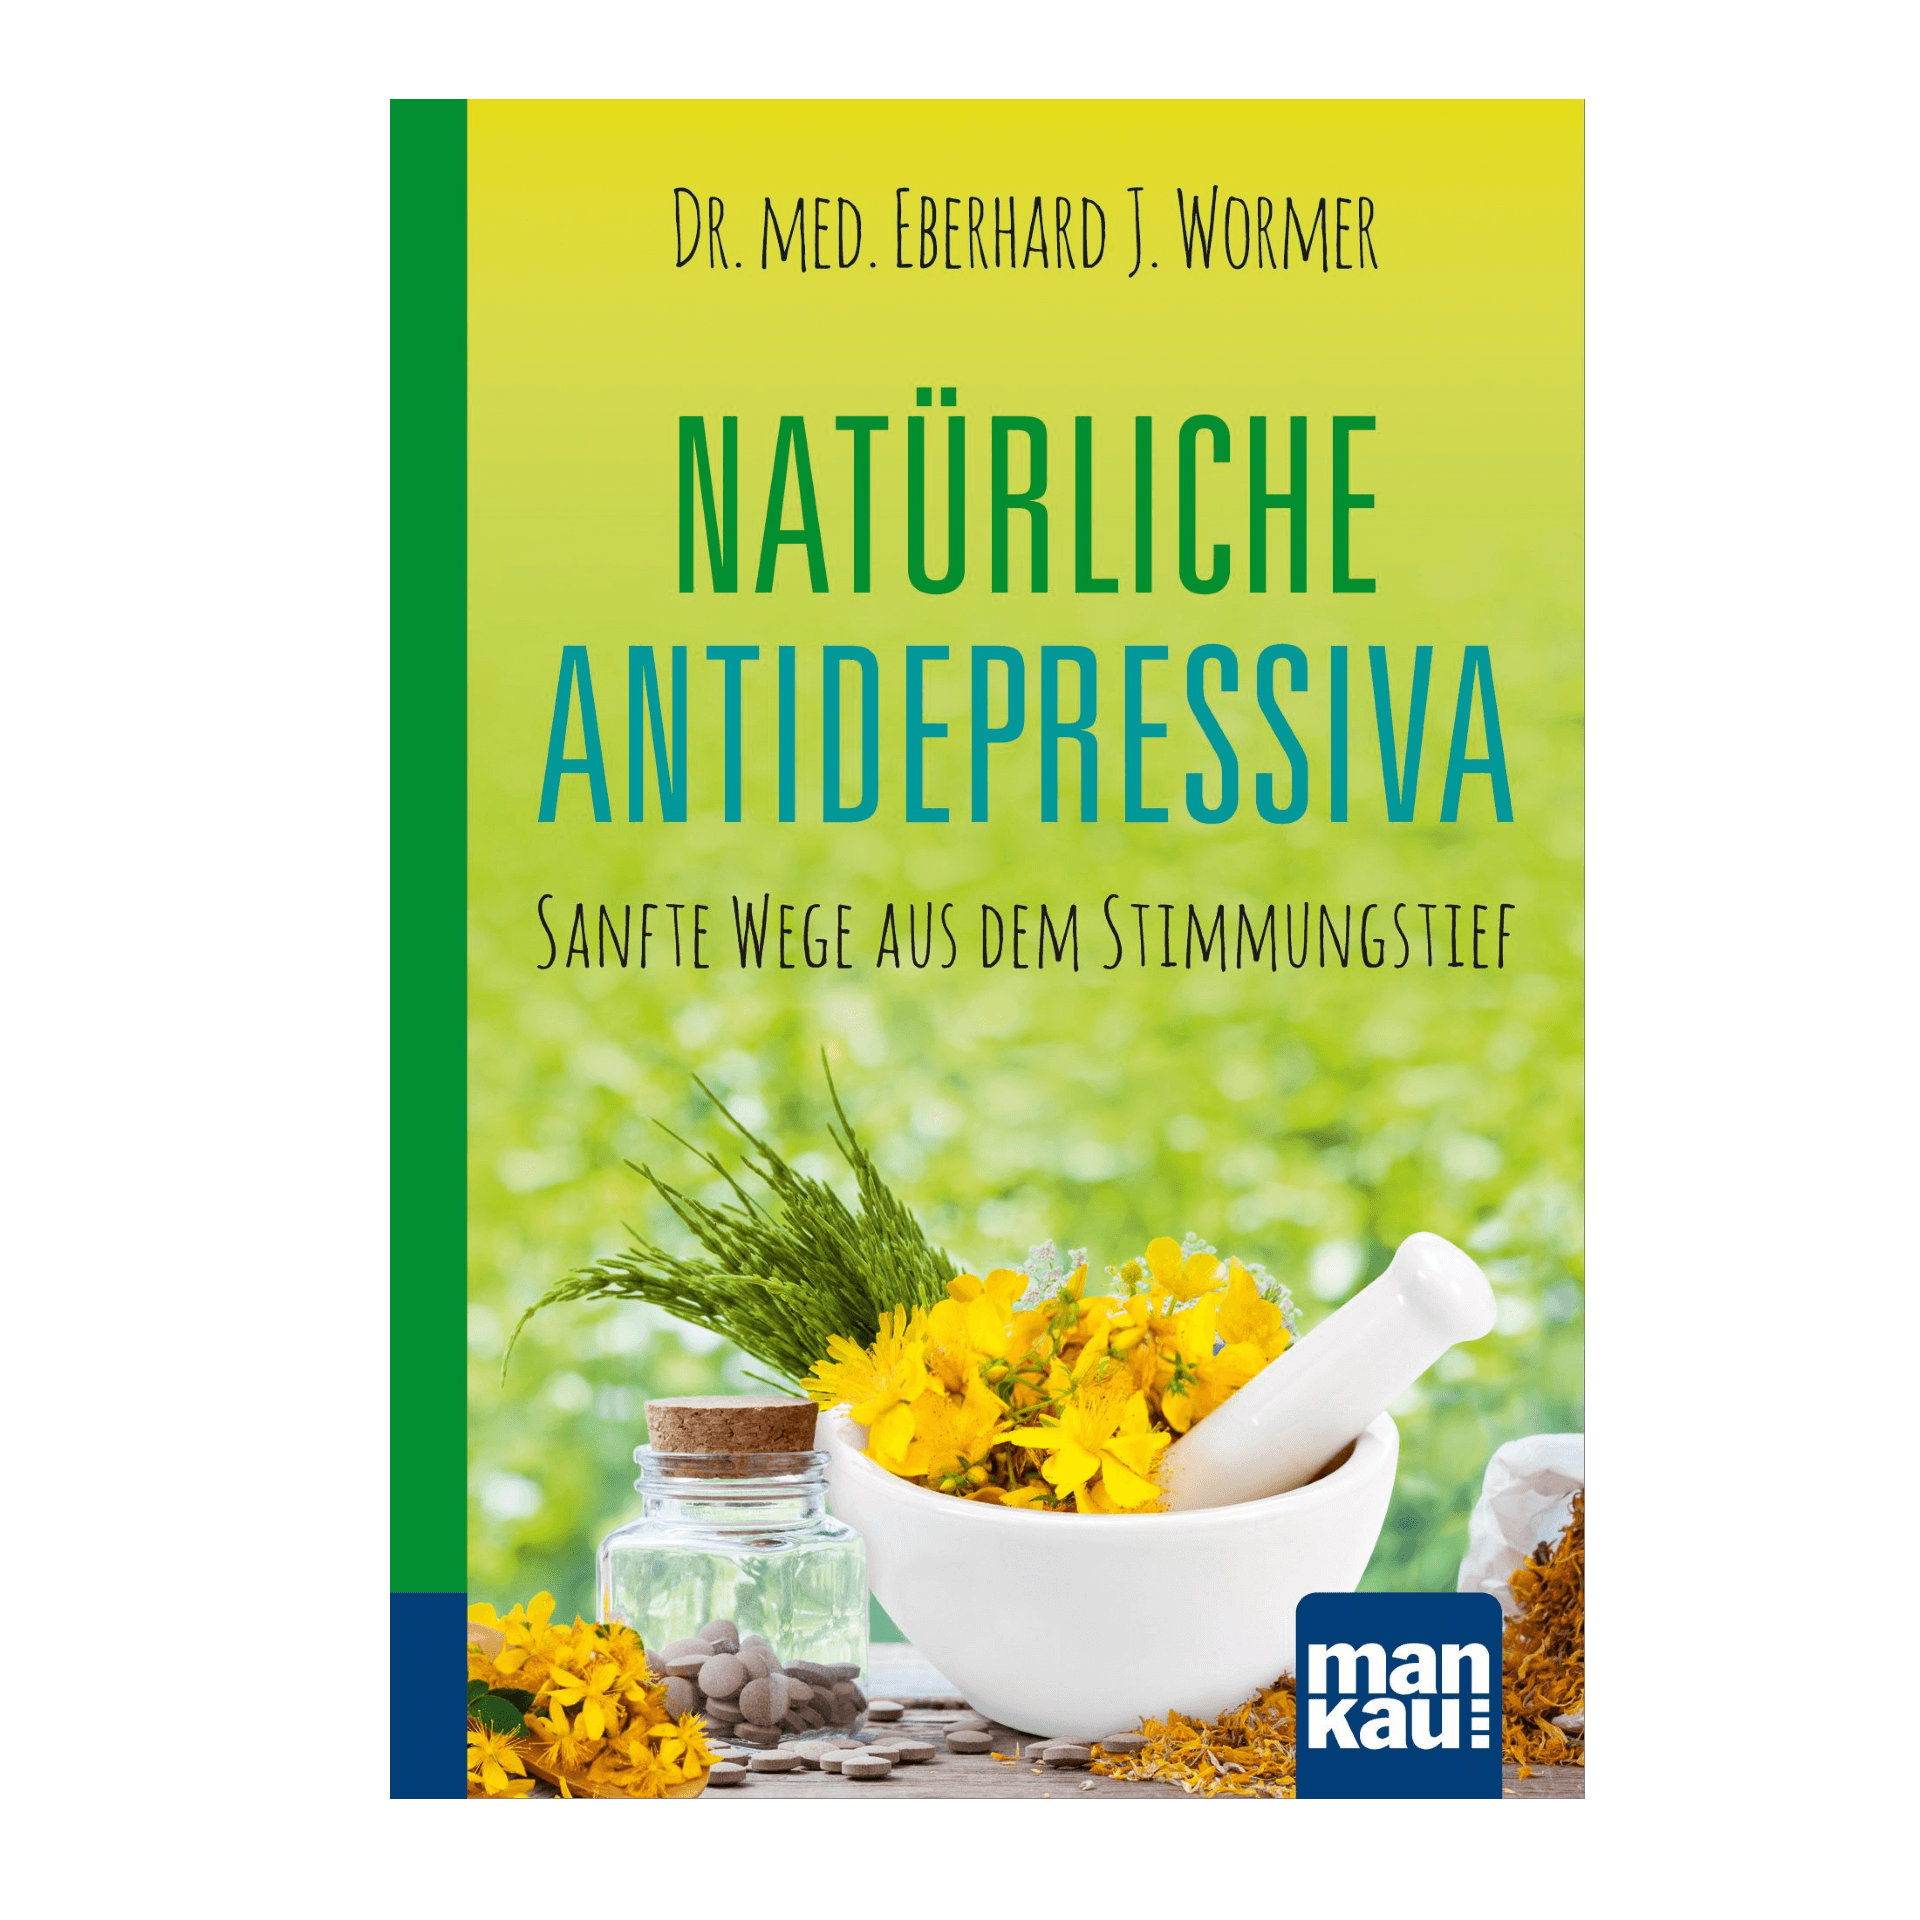 Natürliche Antidepressiva, 158 Seiten